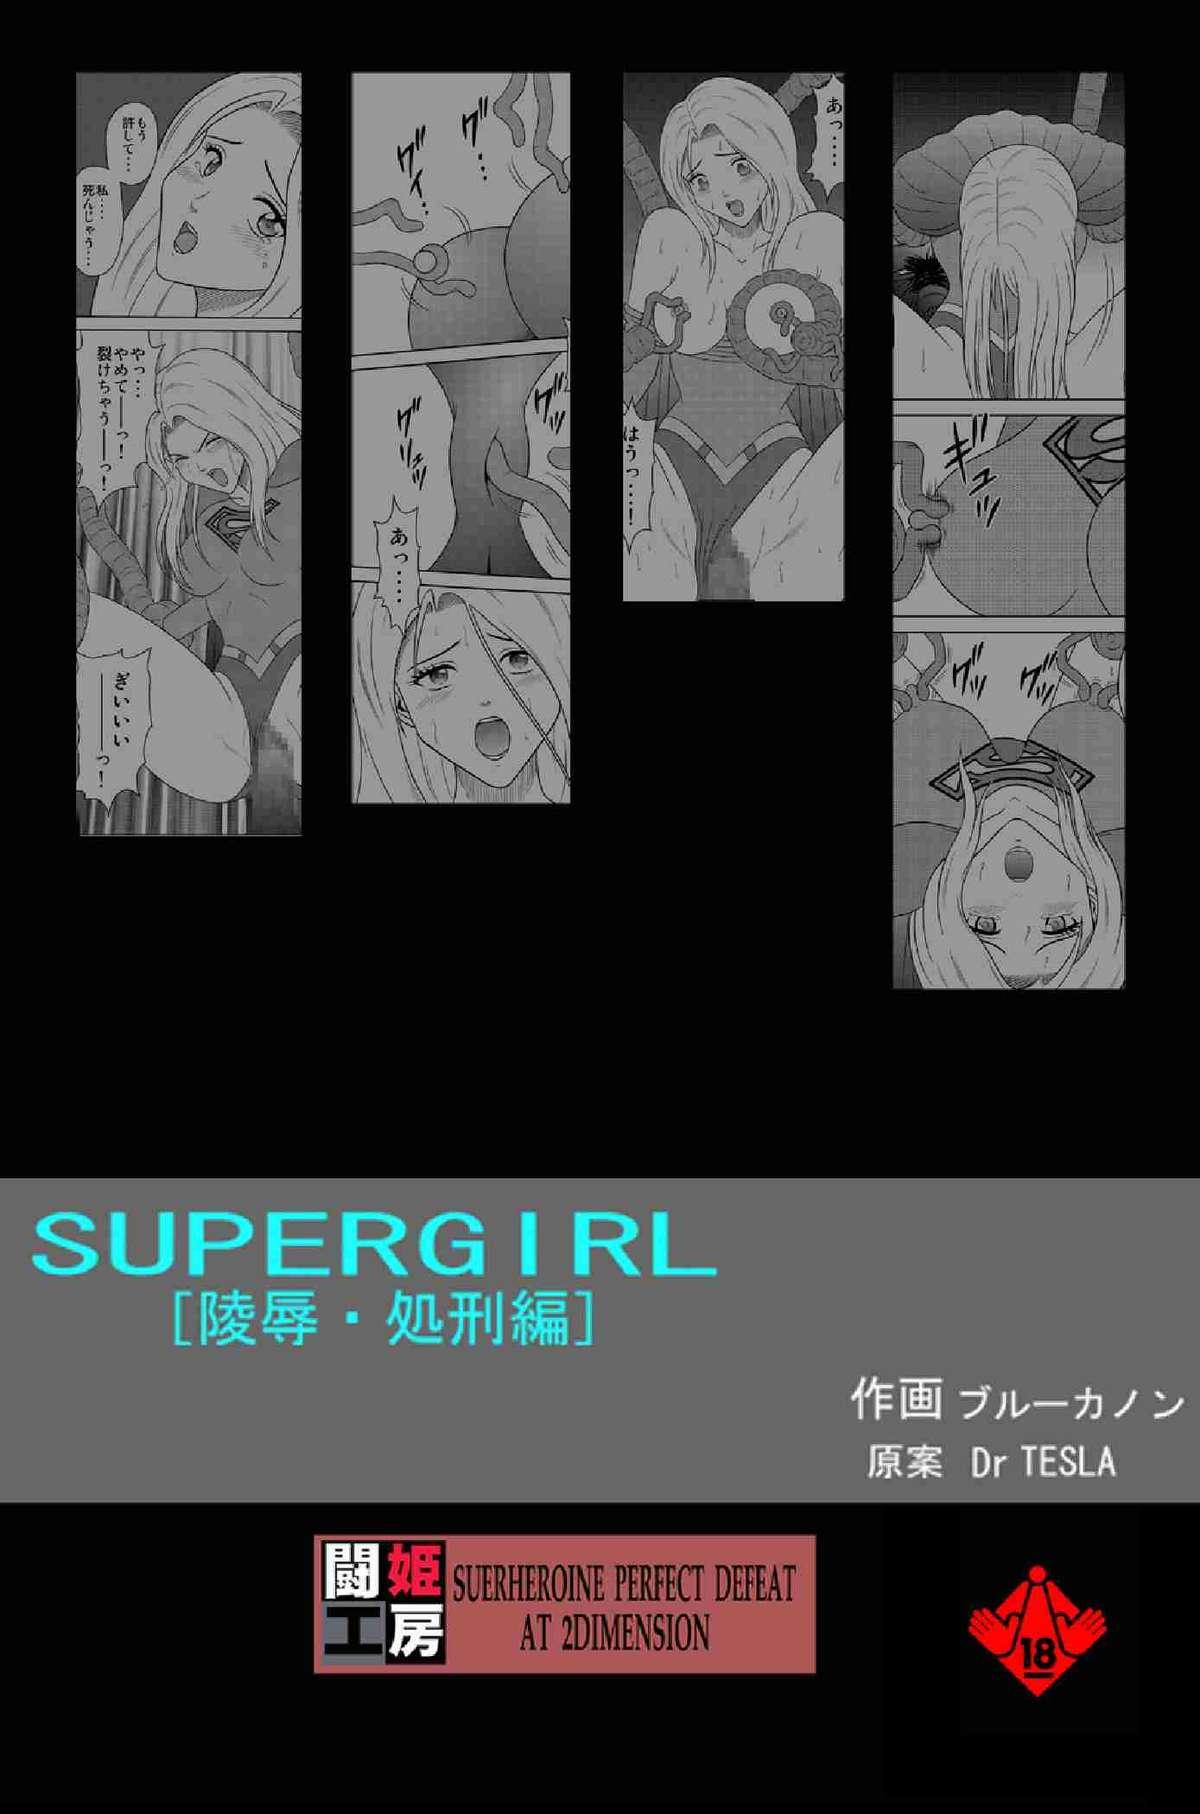 Toukikoubou vol.2 SUPER GIRL 27